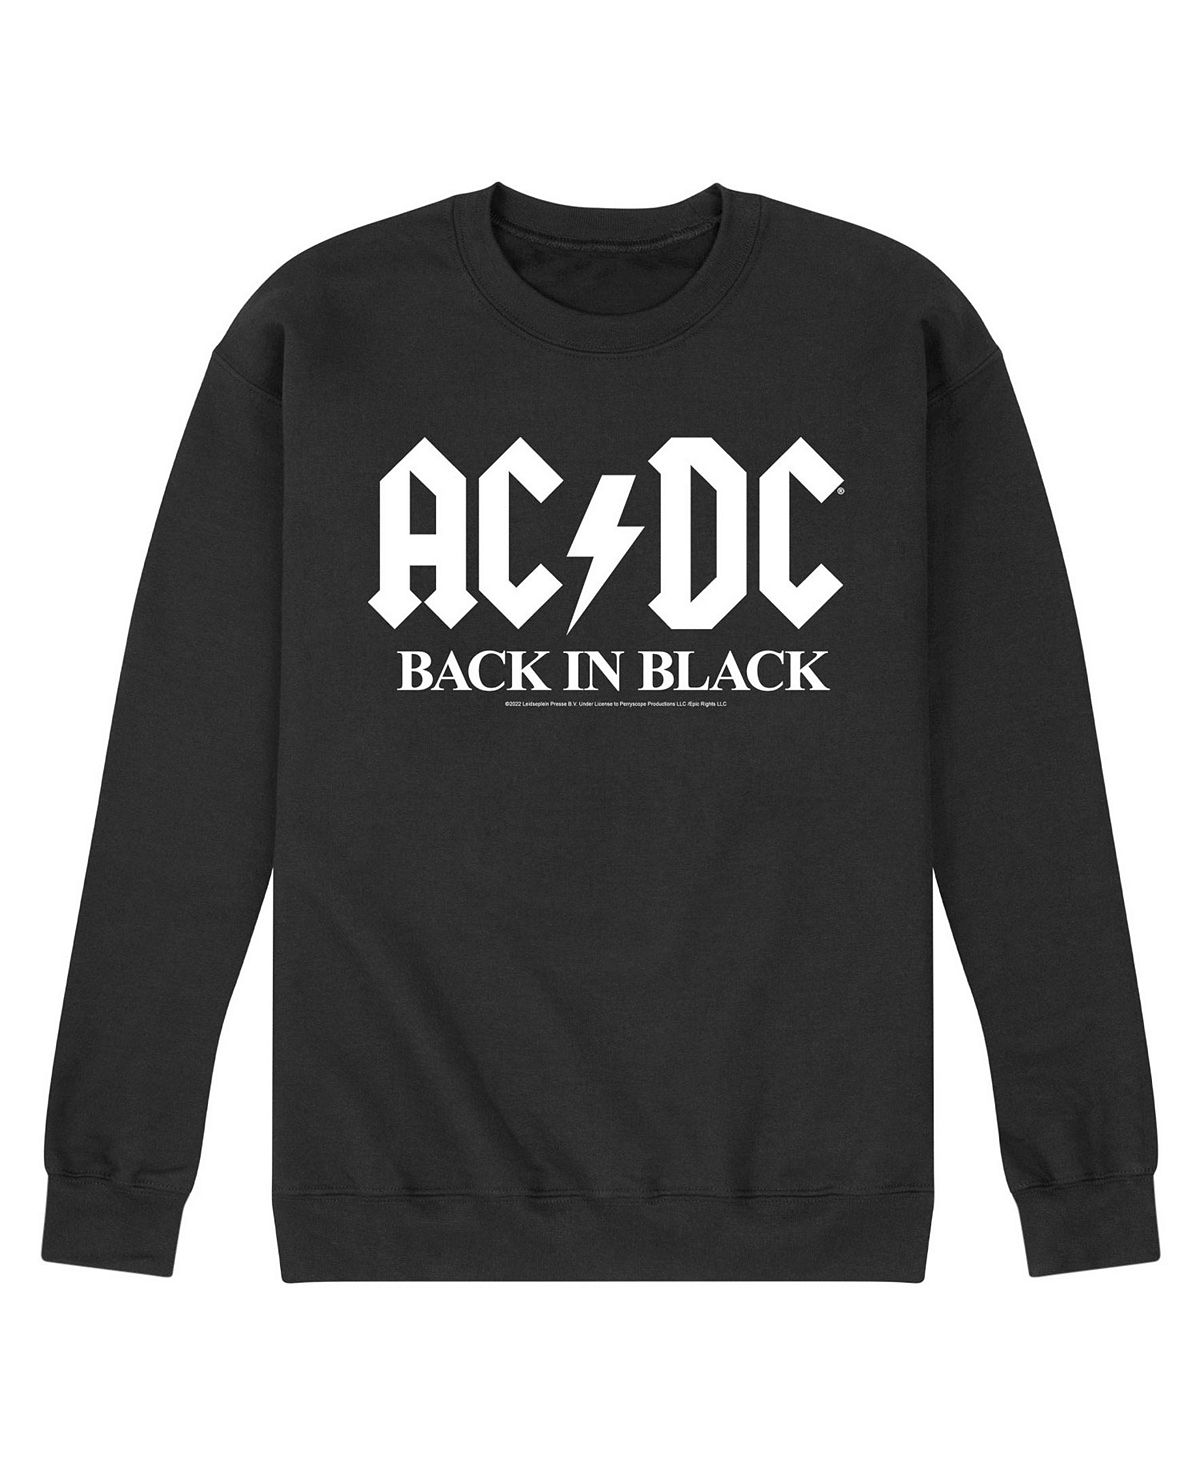 Мужская флисовая футболка acdc back in black AIRWAVES, черный